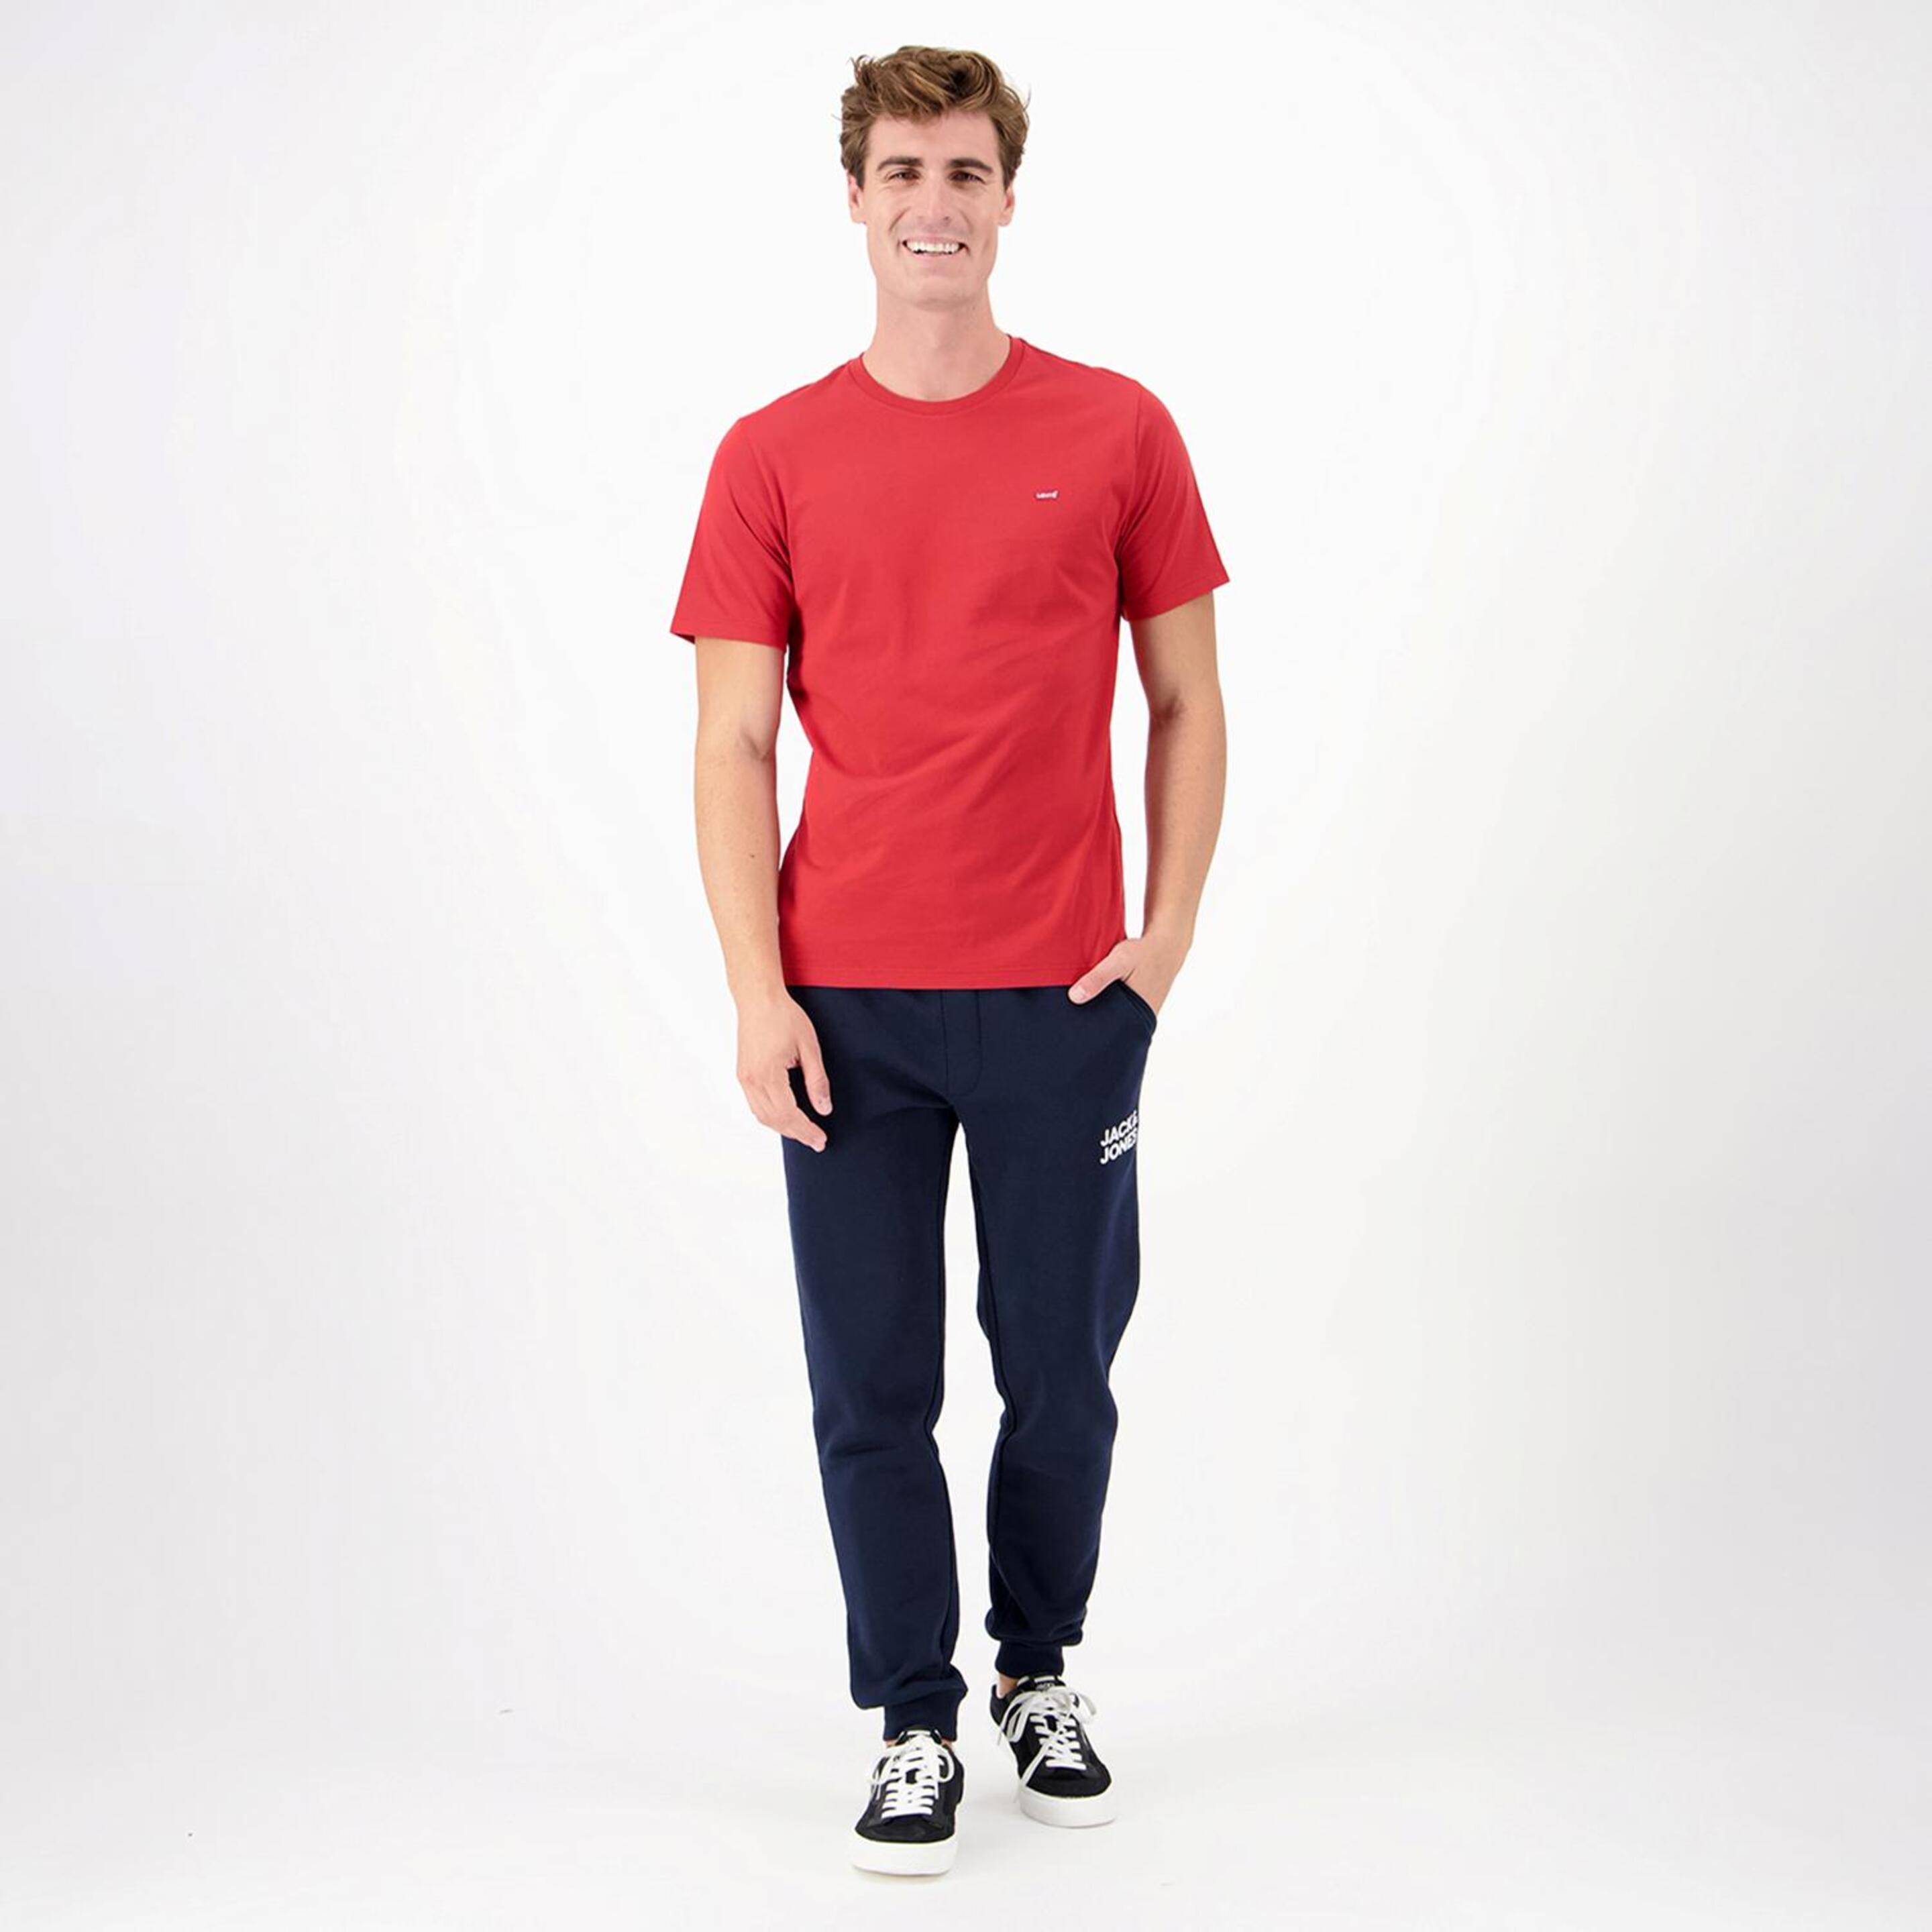 Levi's Original - Rojo - Camiseta Hombre